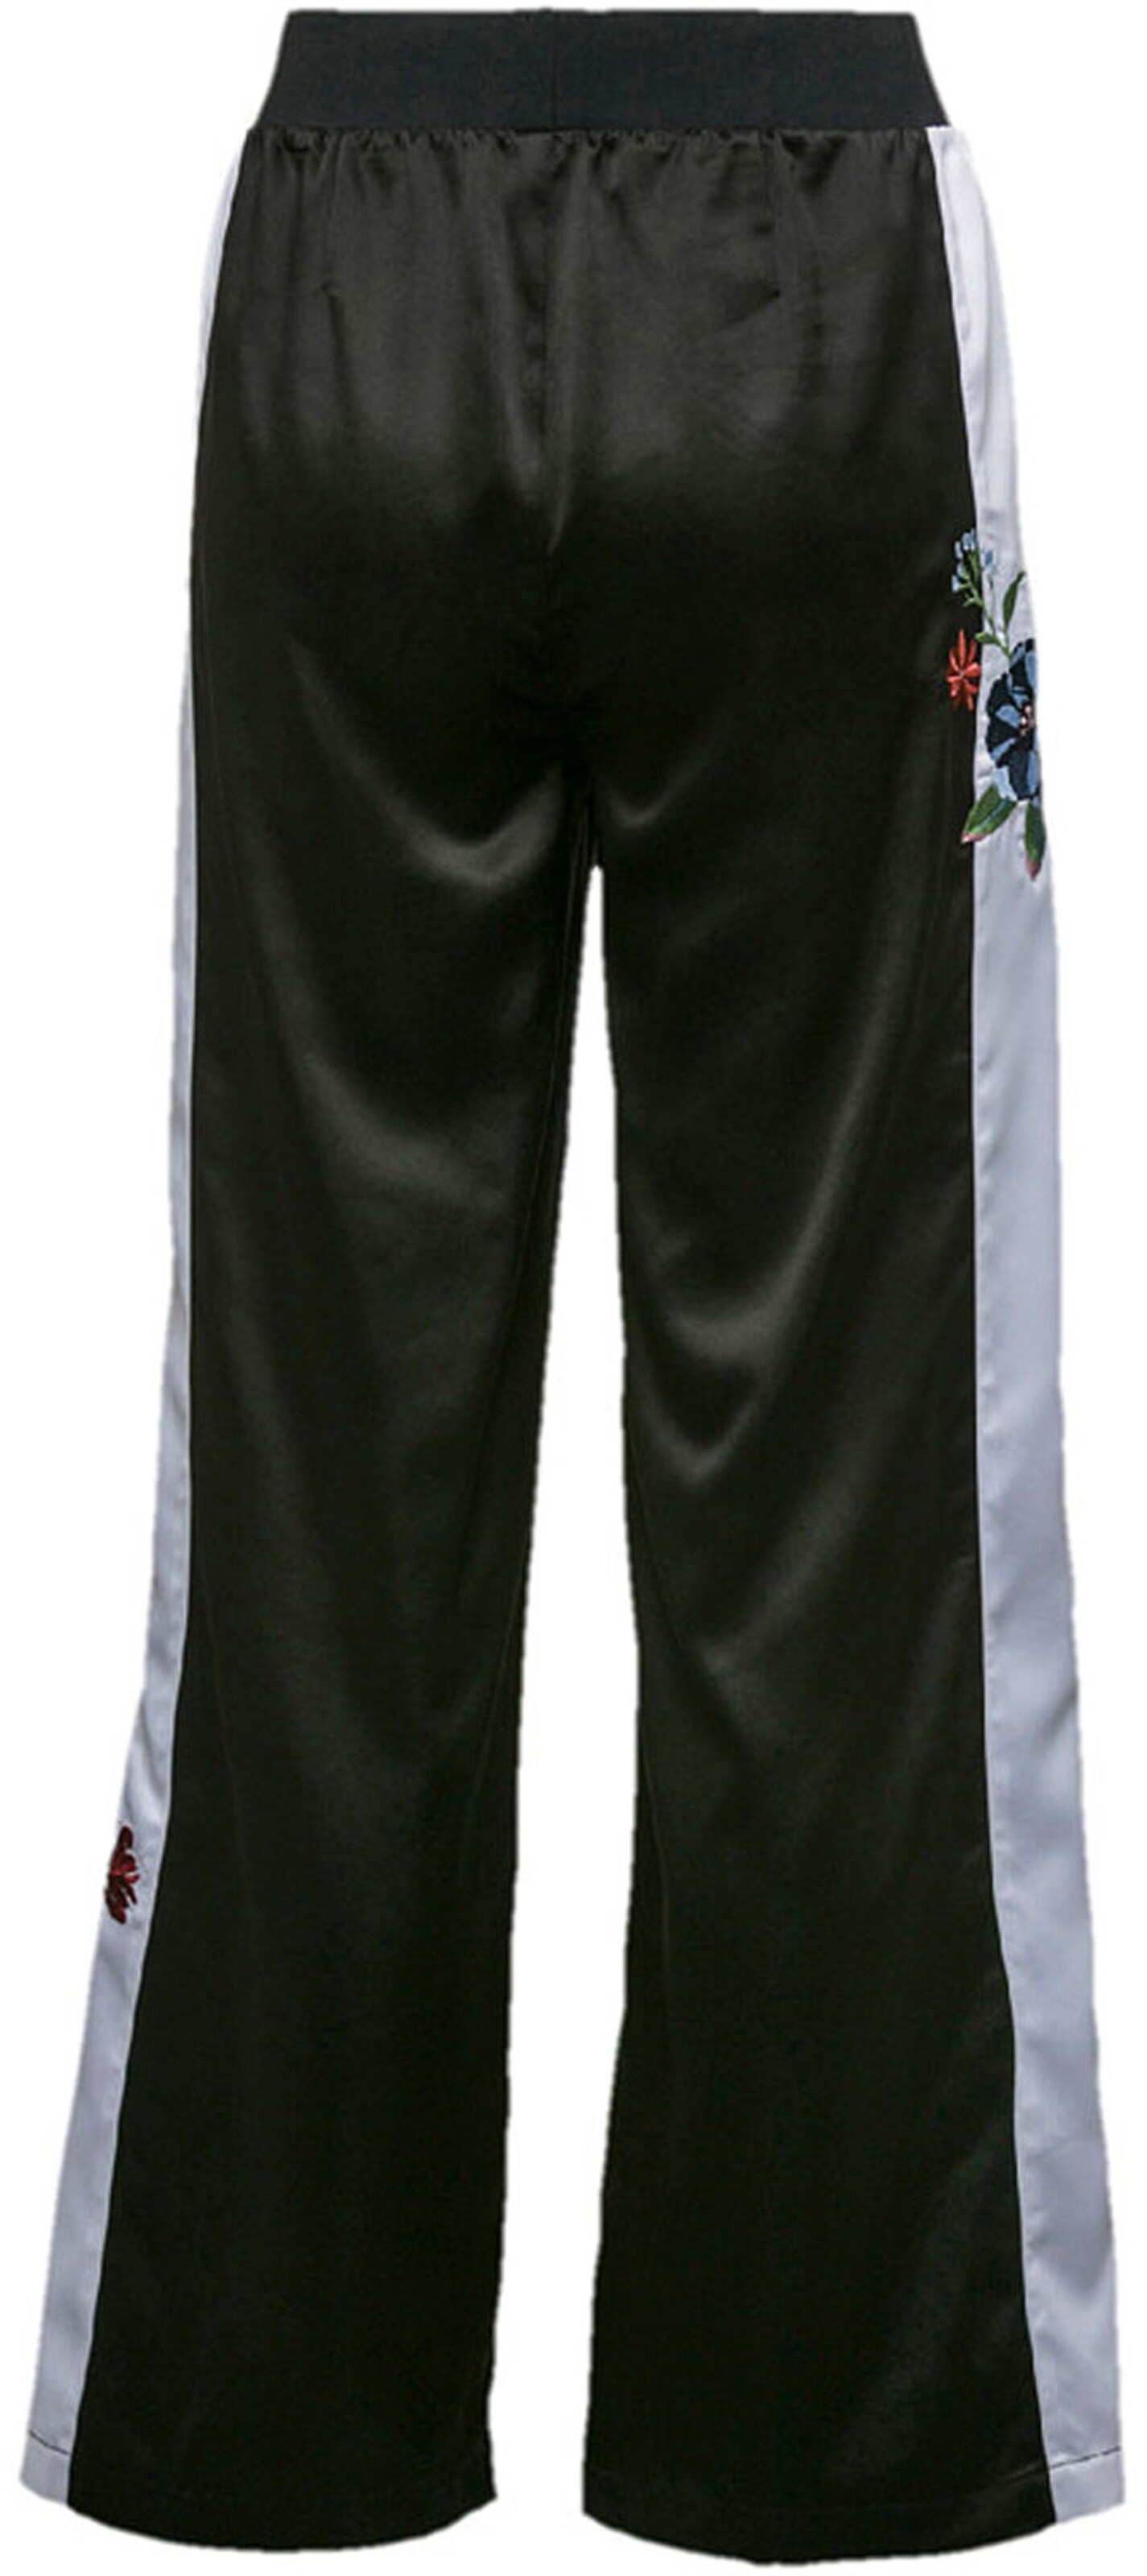 Pantalons Sweathose Premium Archive PUMA en Noir 